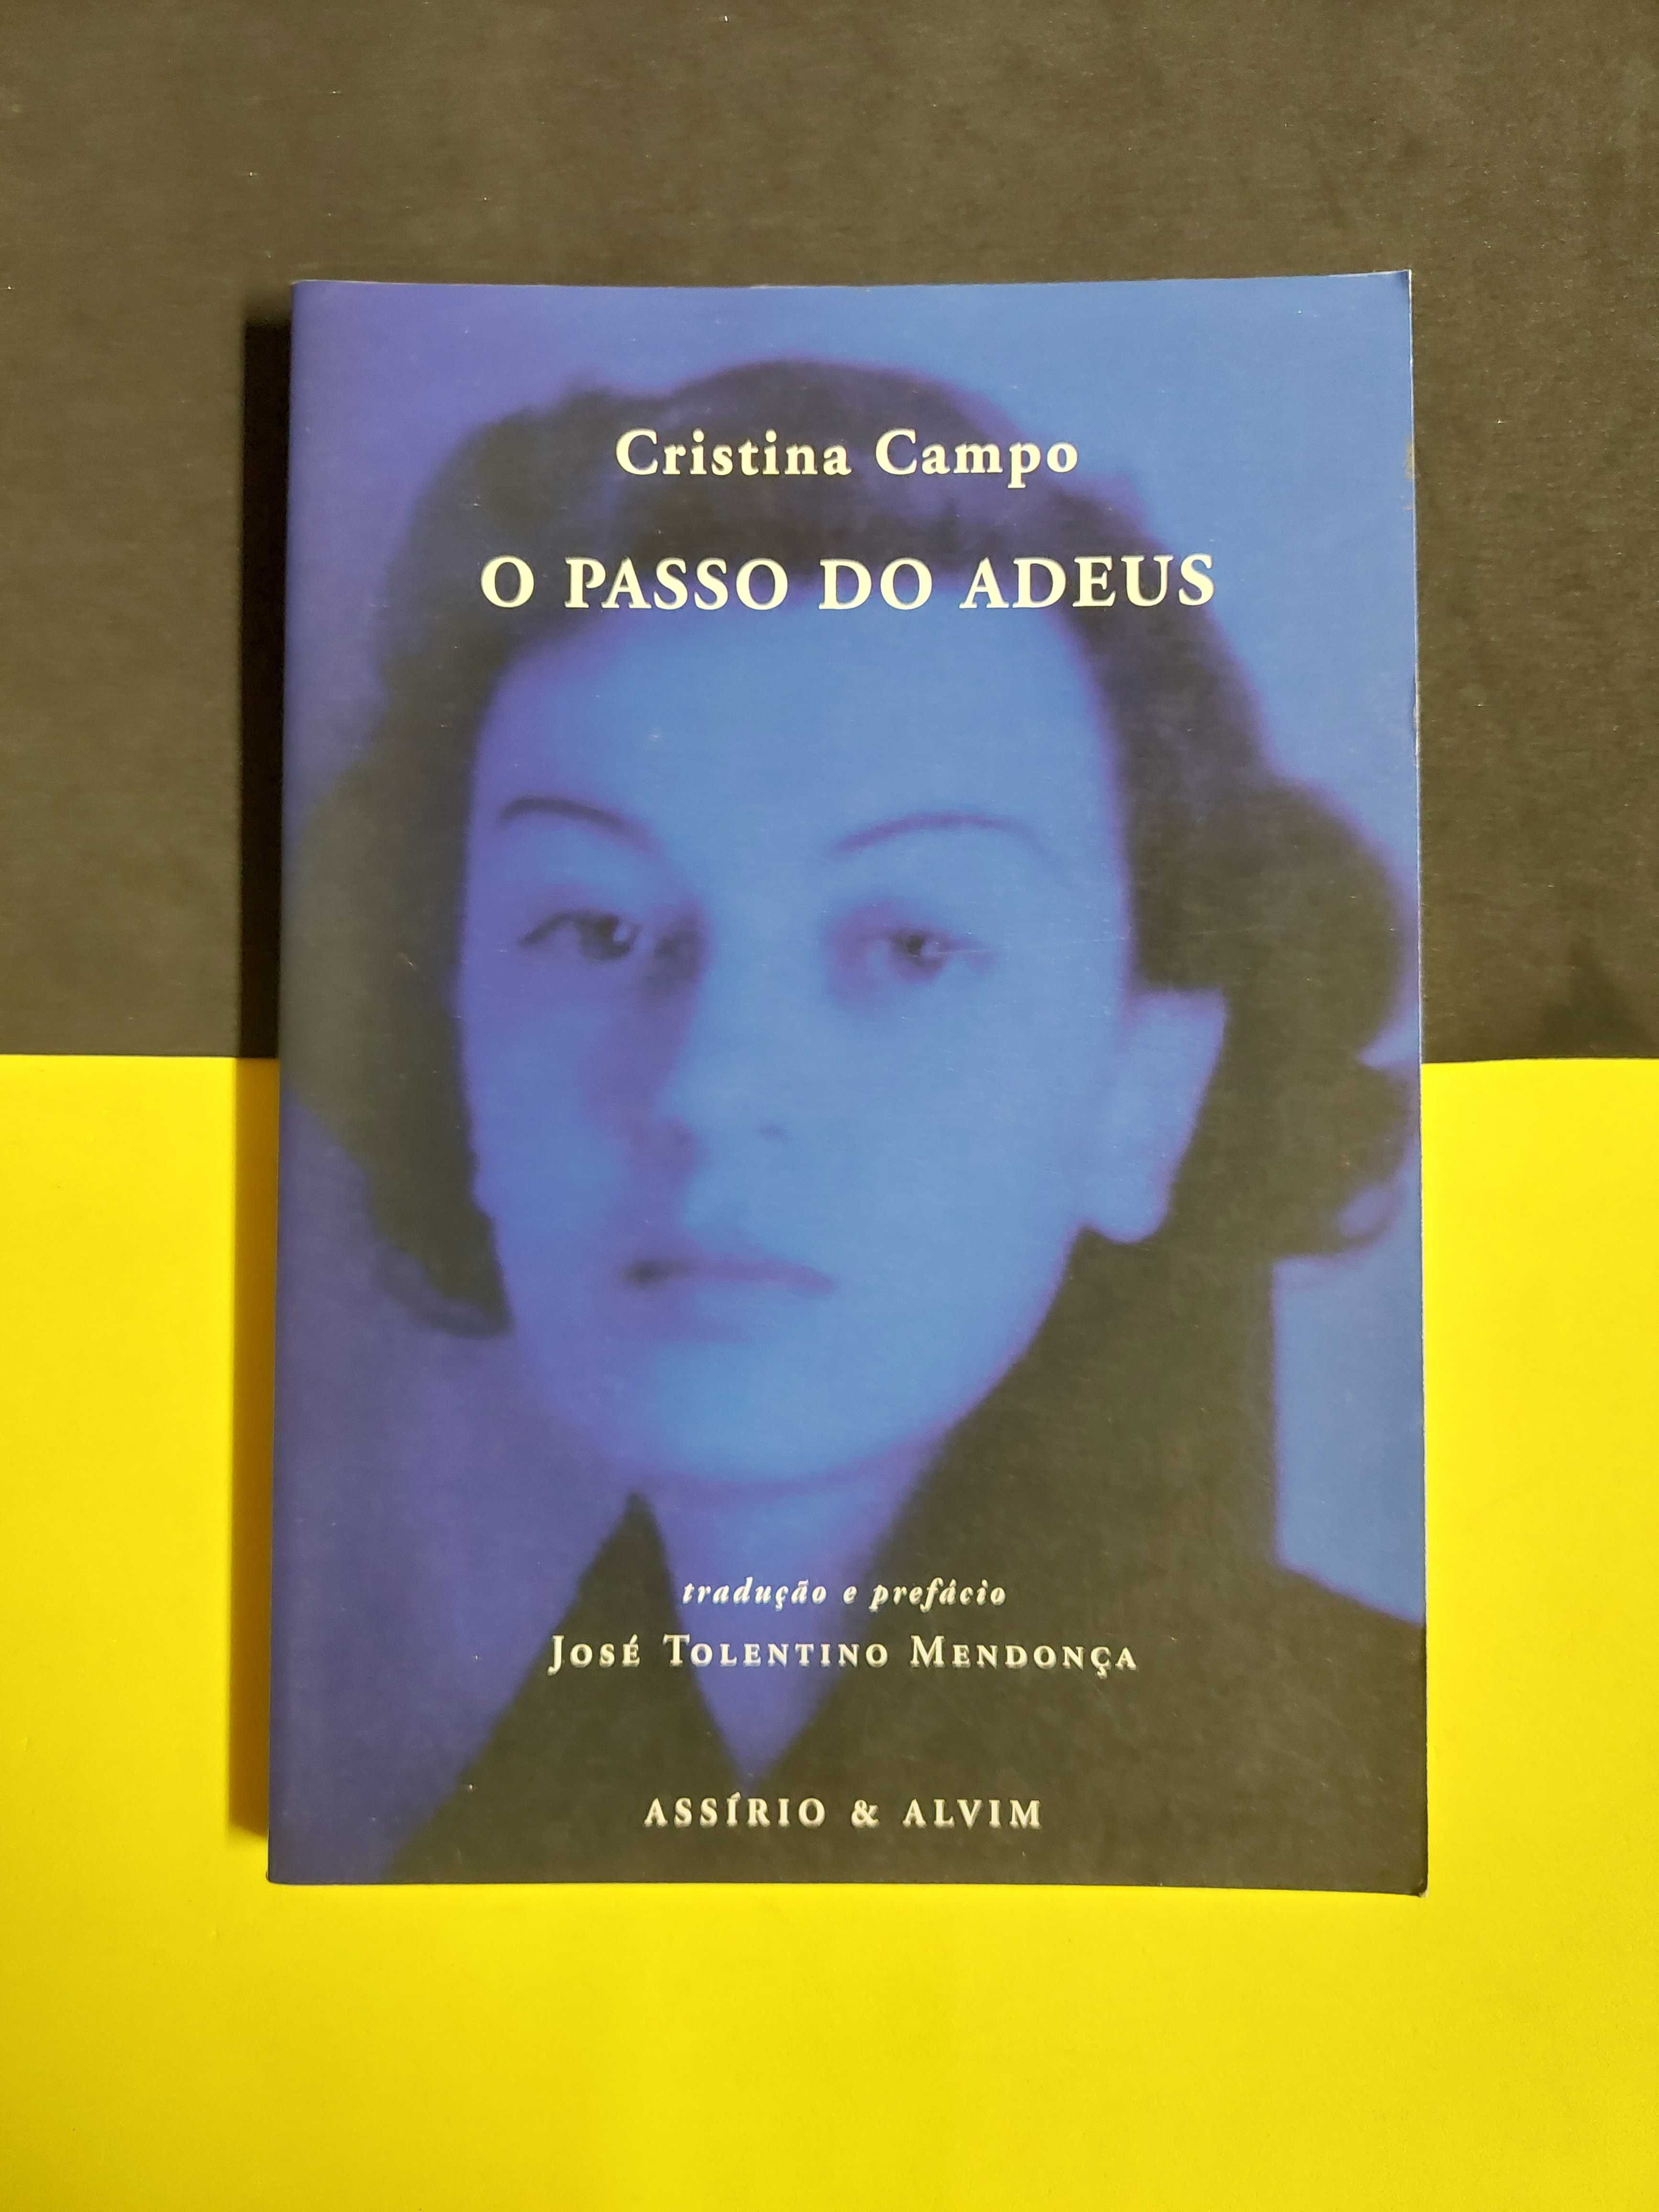 Cristina Campo - O passo do adeus